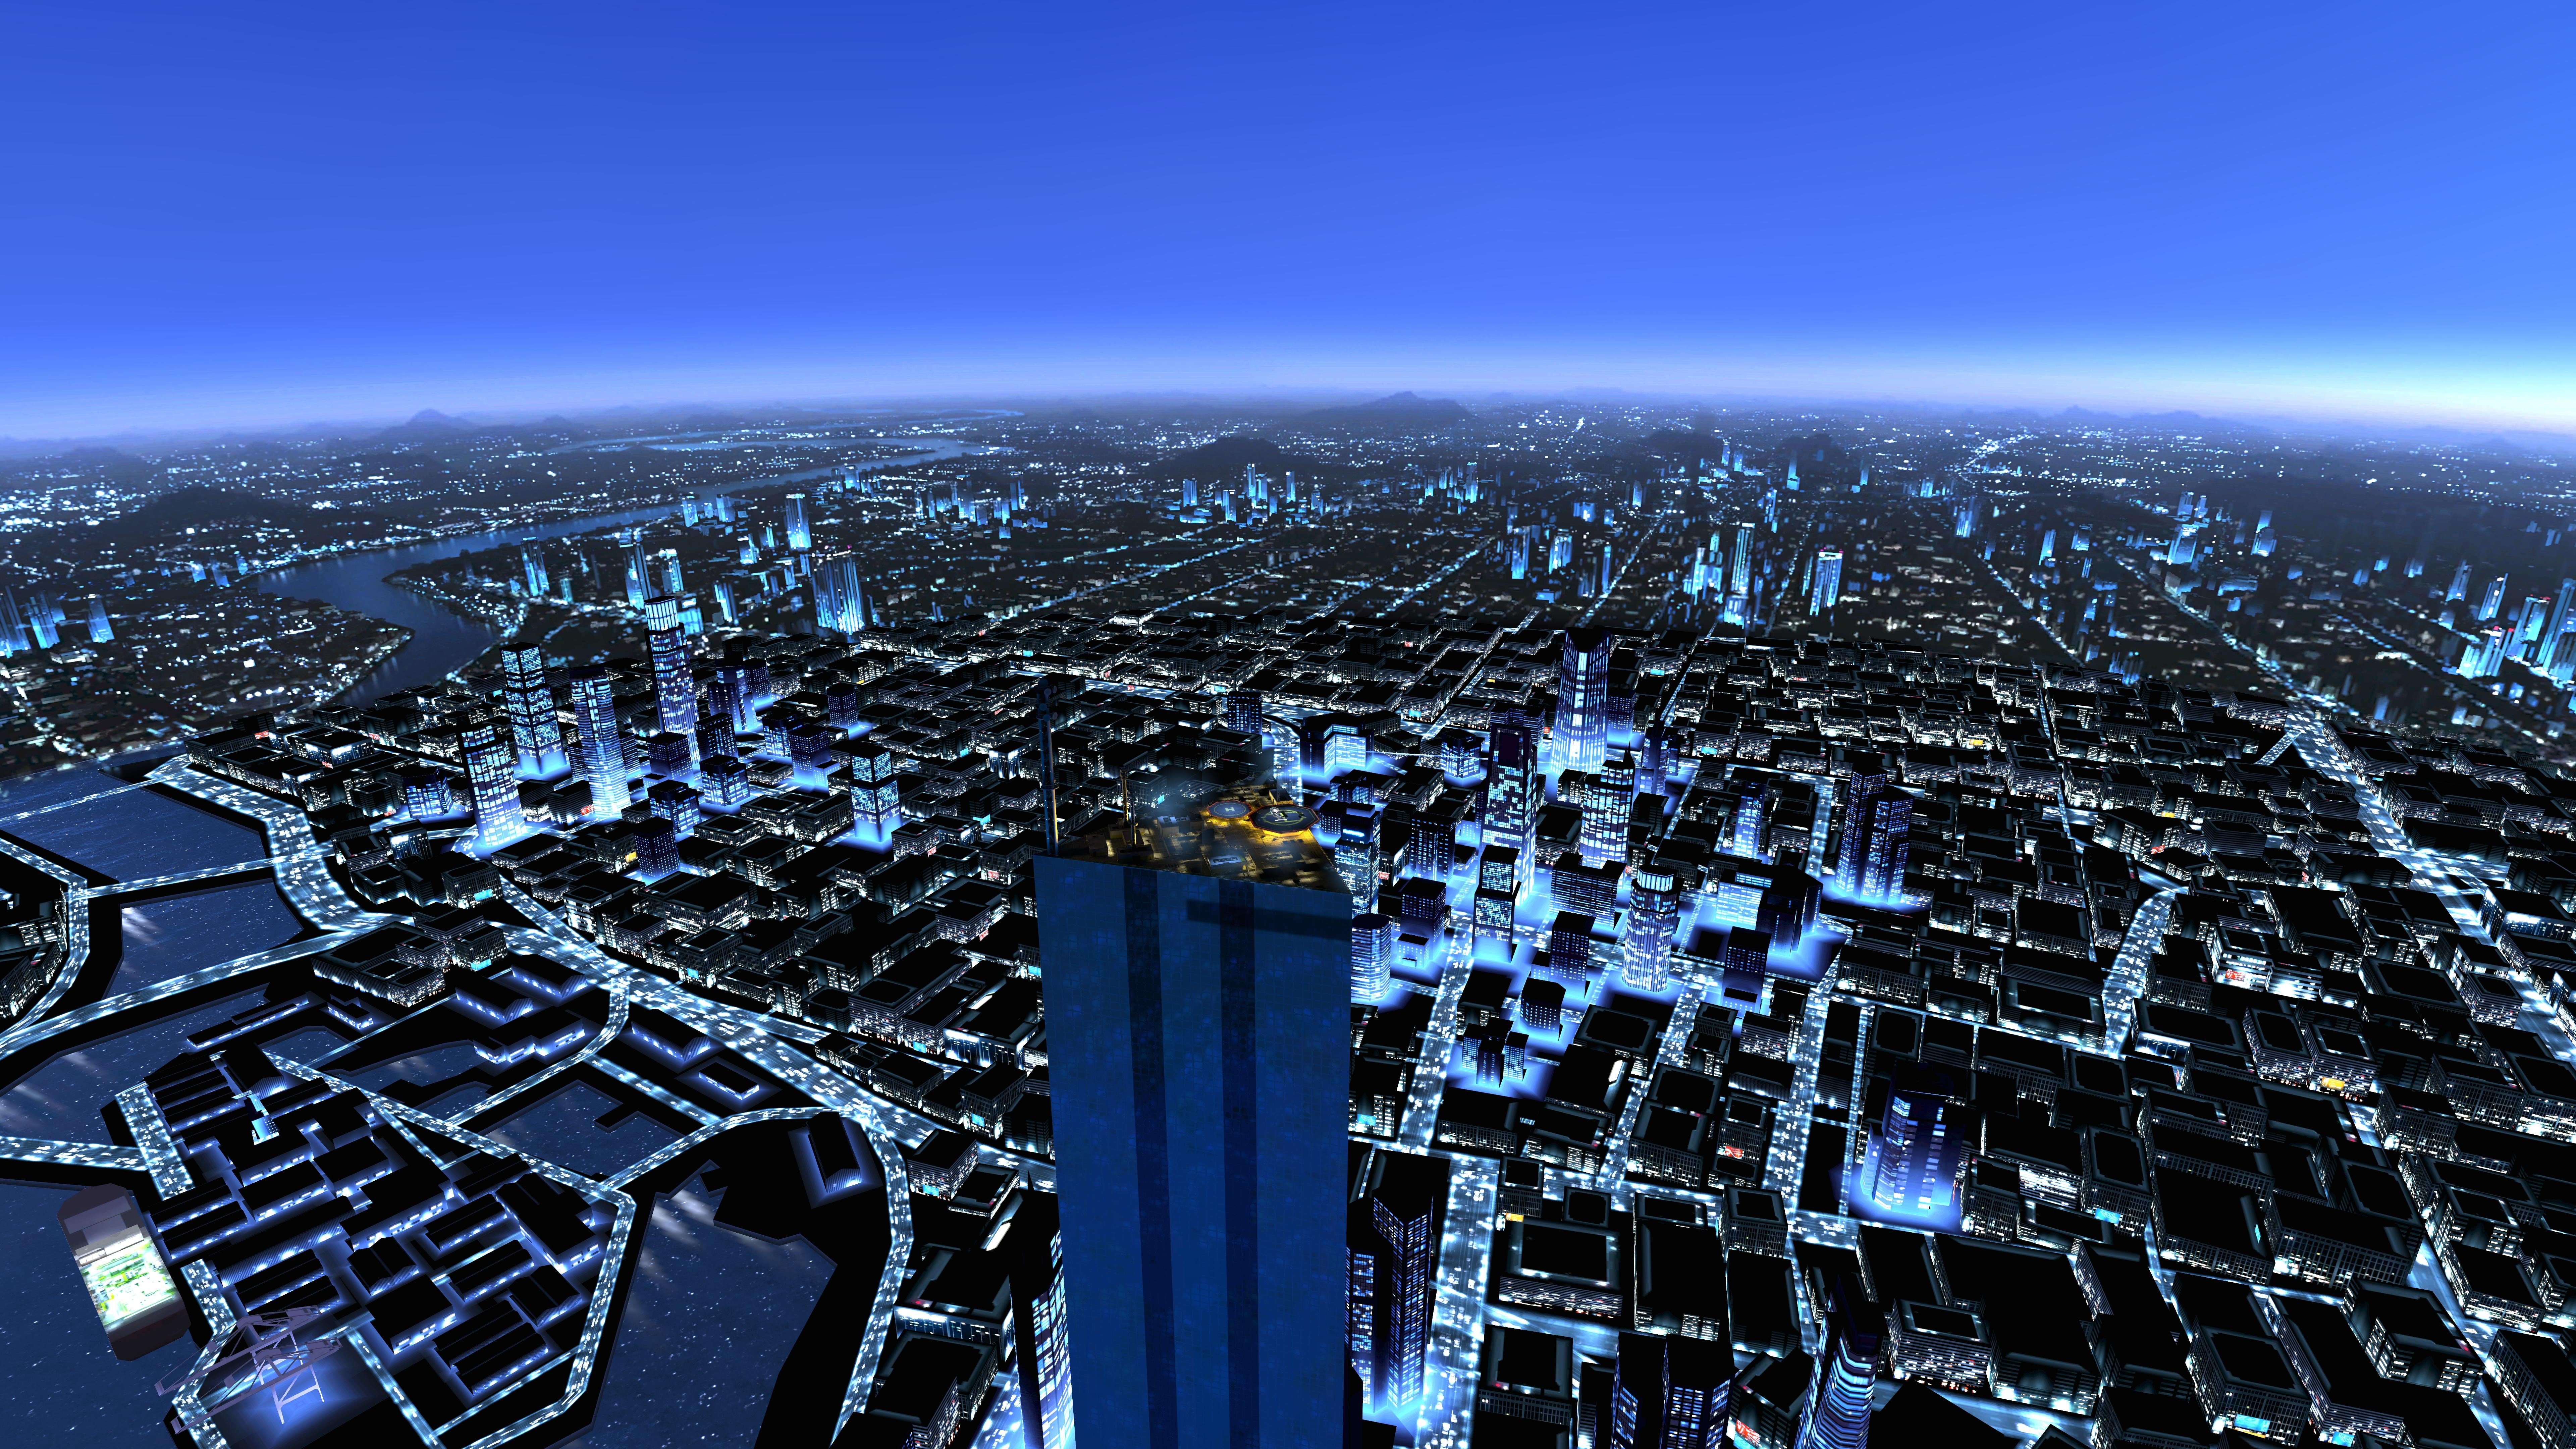 fond d'écran uhd,zone métropolitaine,paysage urbain,zone urbaine,ville,gratte ciel